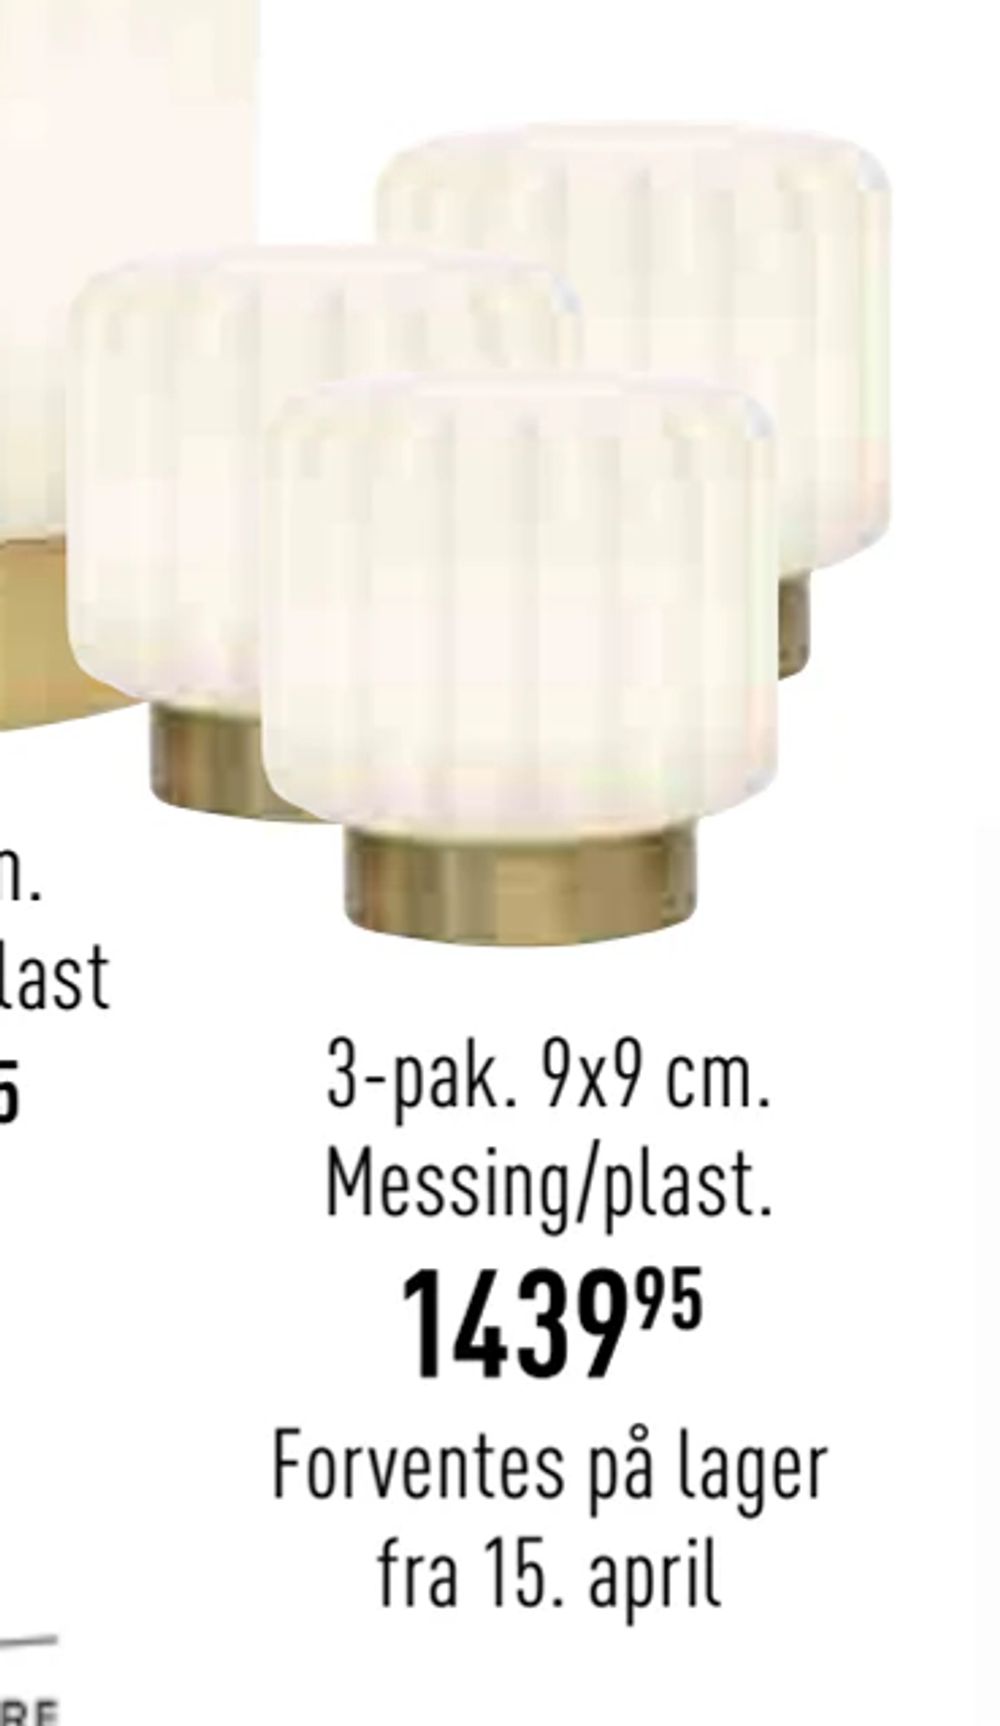 Tilbud på Dentelles Portable bordlampe fra Imerco til 1.439,95 kr.